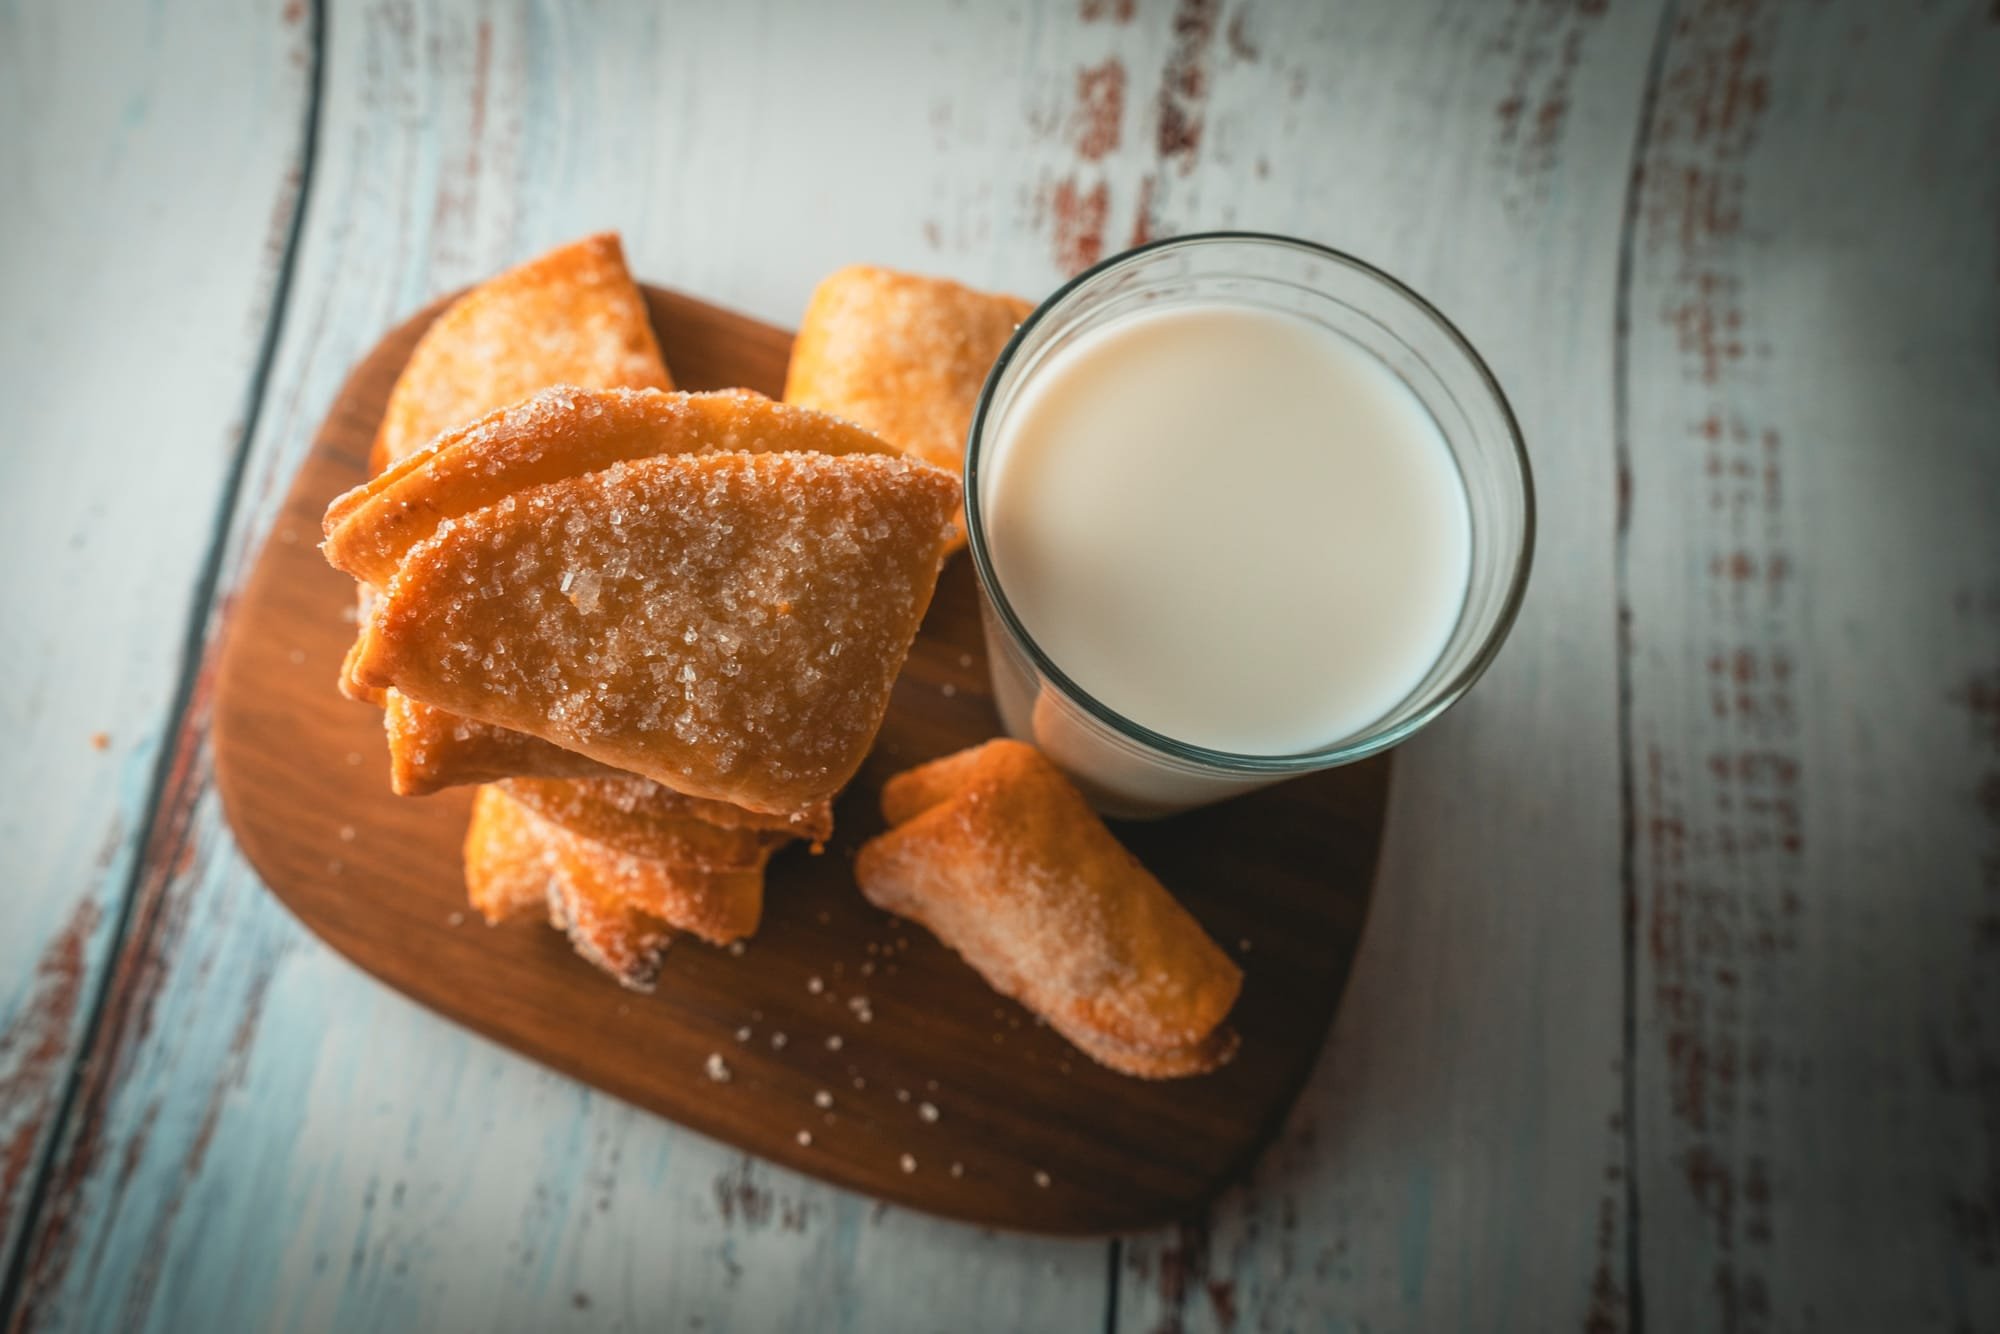 "إضافة بسيطة" إلى الخبز والحليب قد تحصنك من كورونا